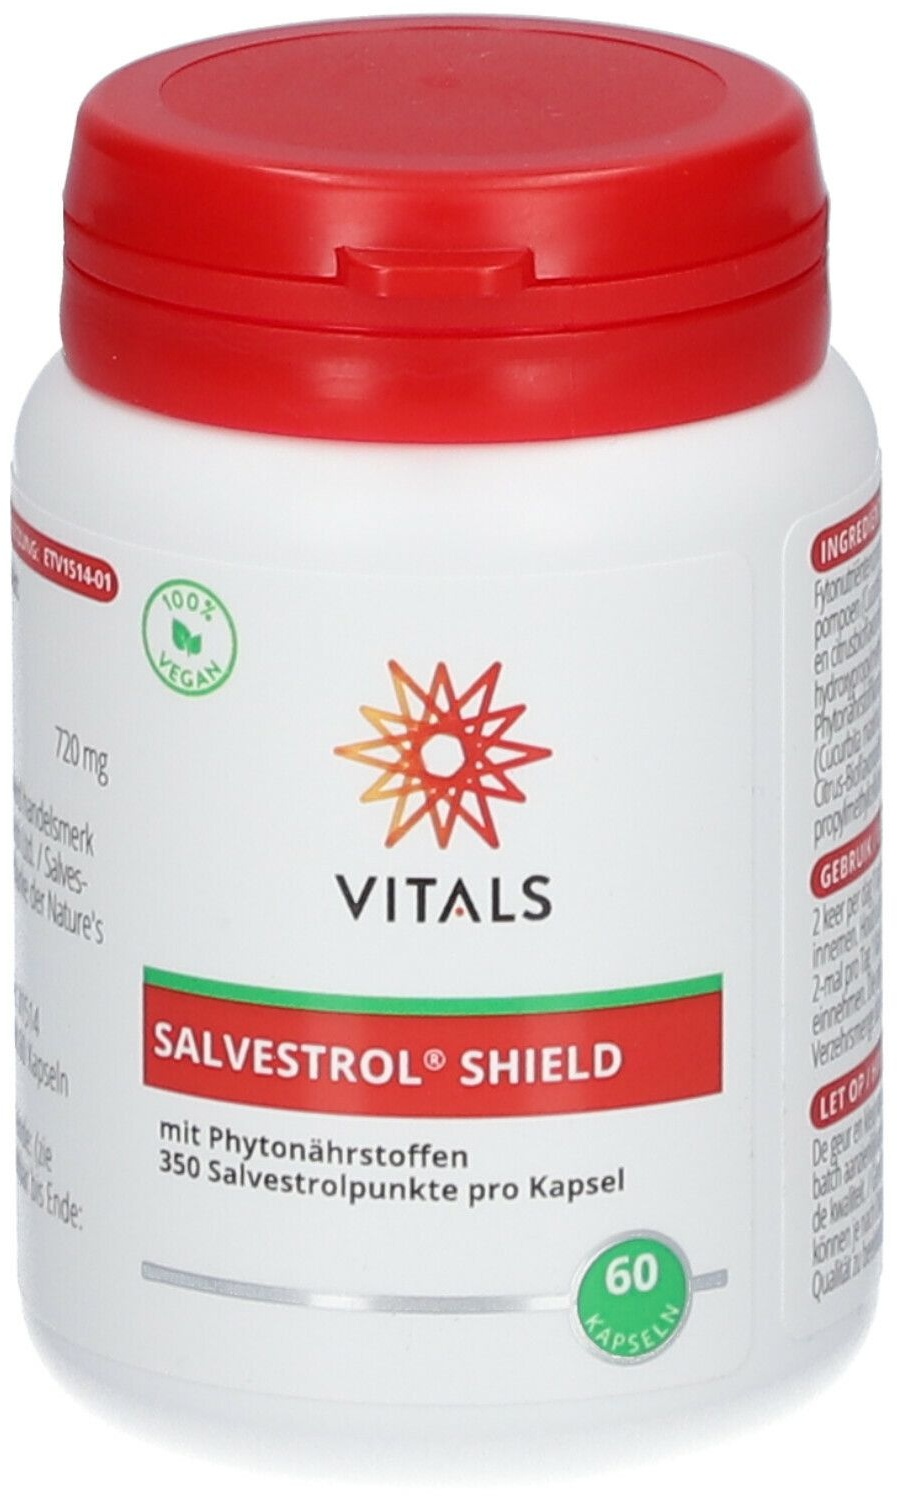 Vitals Salvestrol® Shield 60 pc(s) capsule(s)